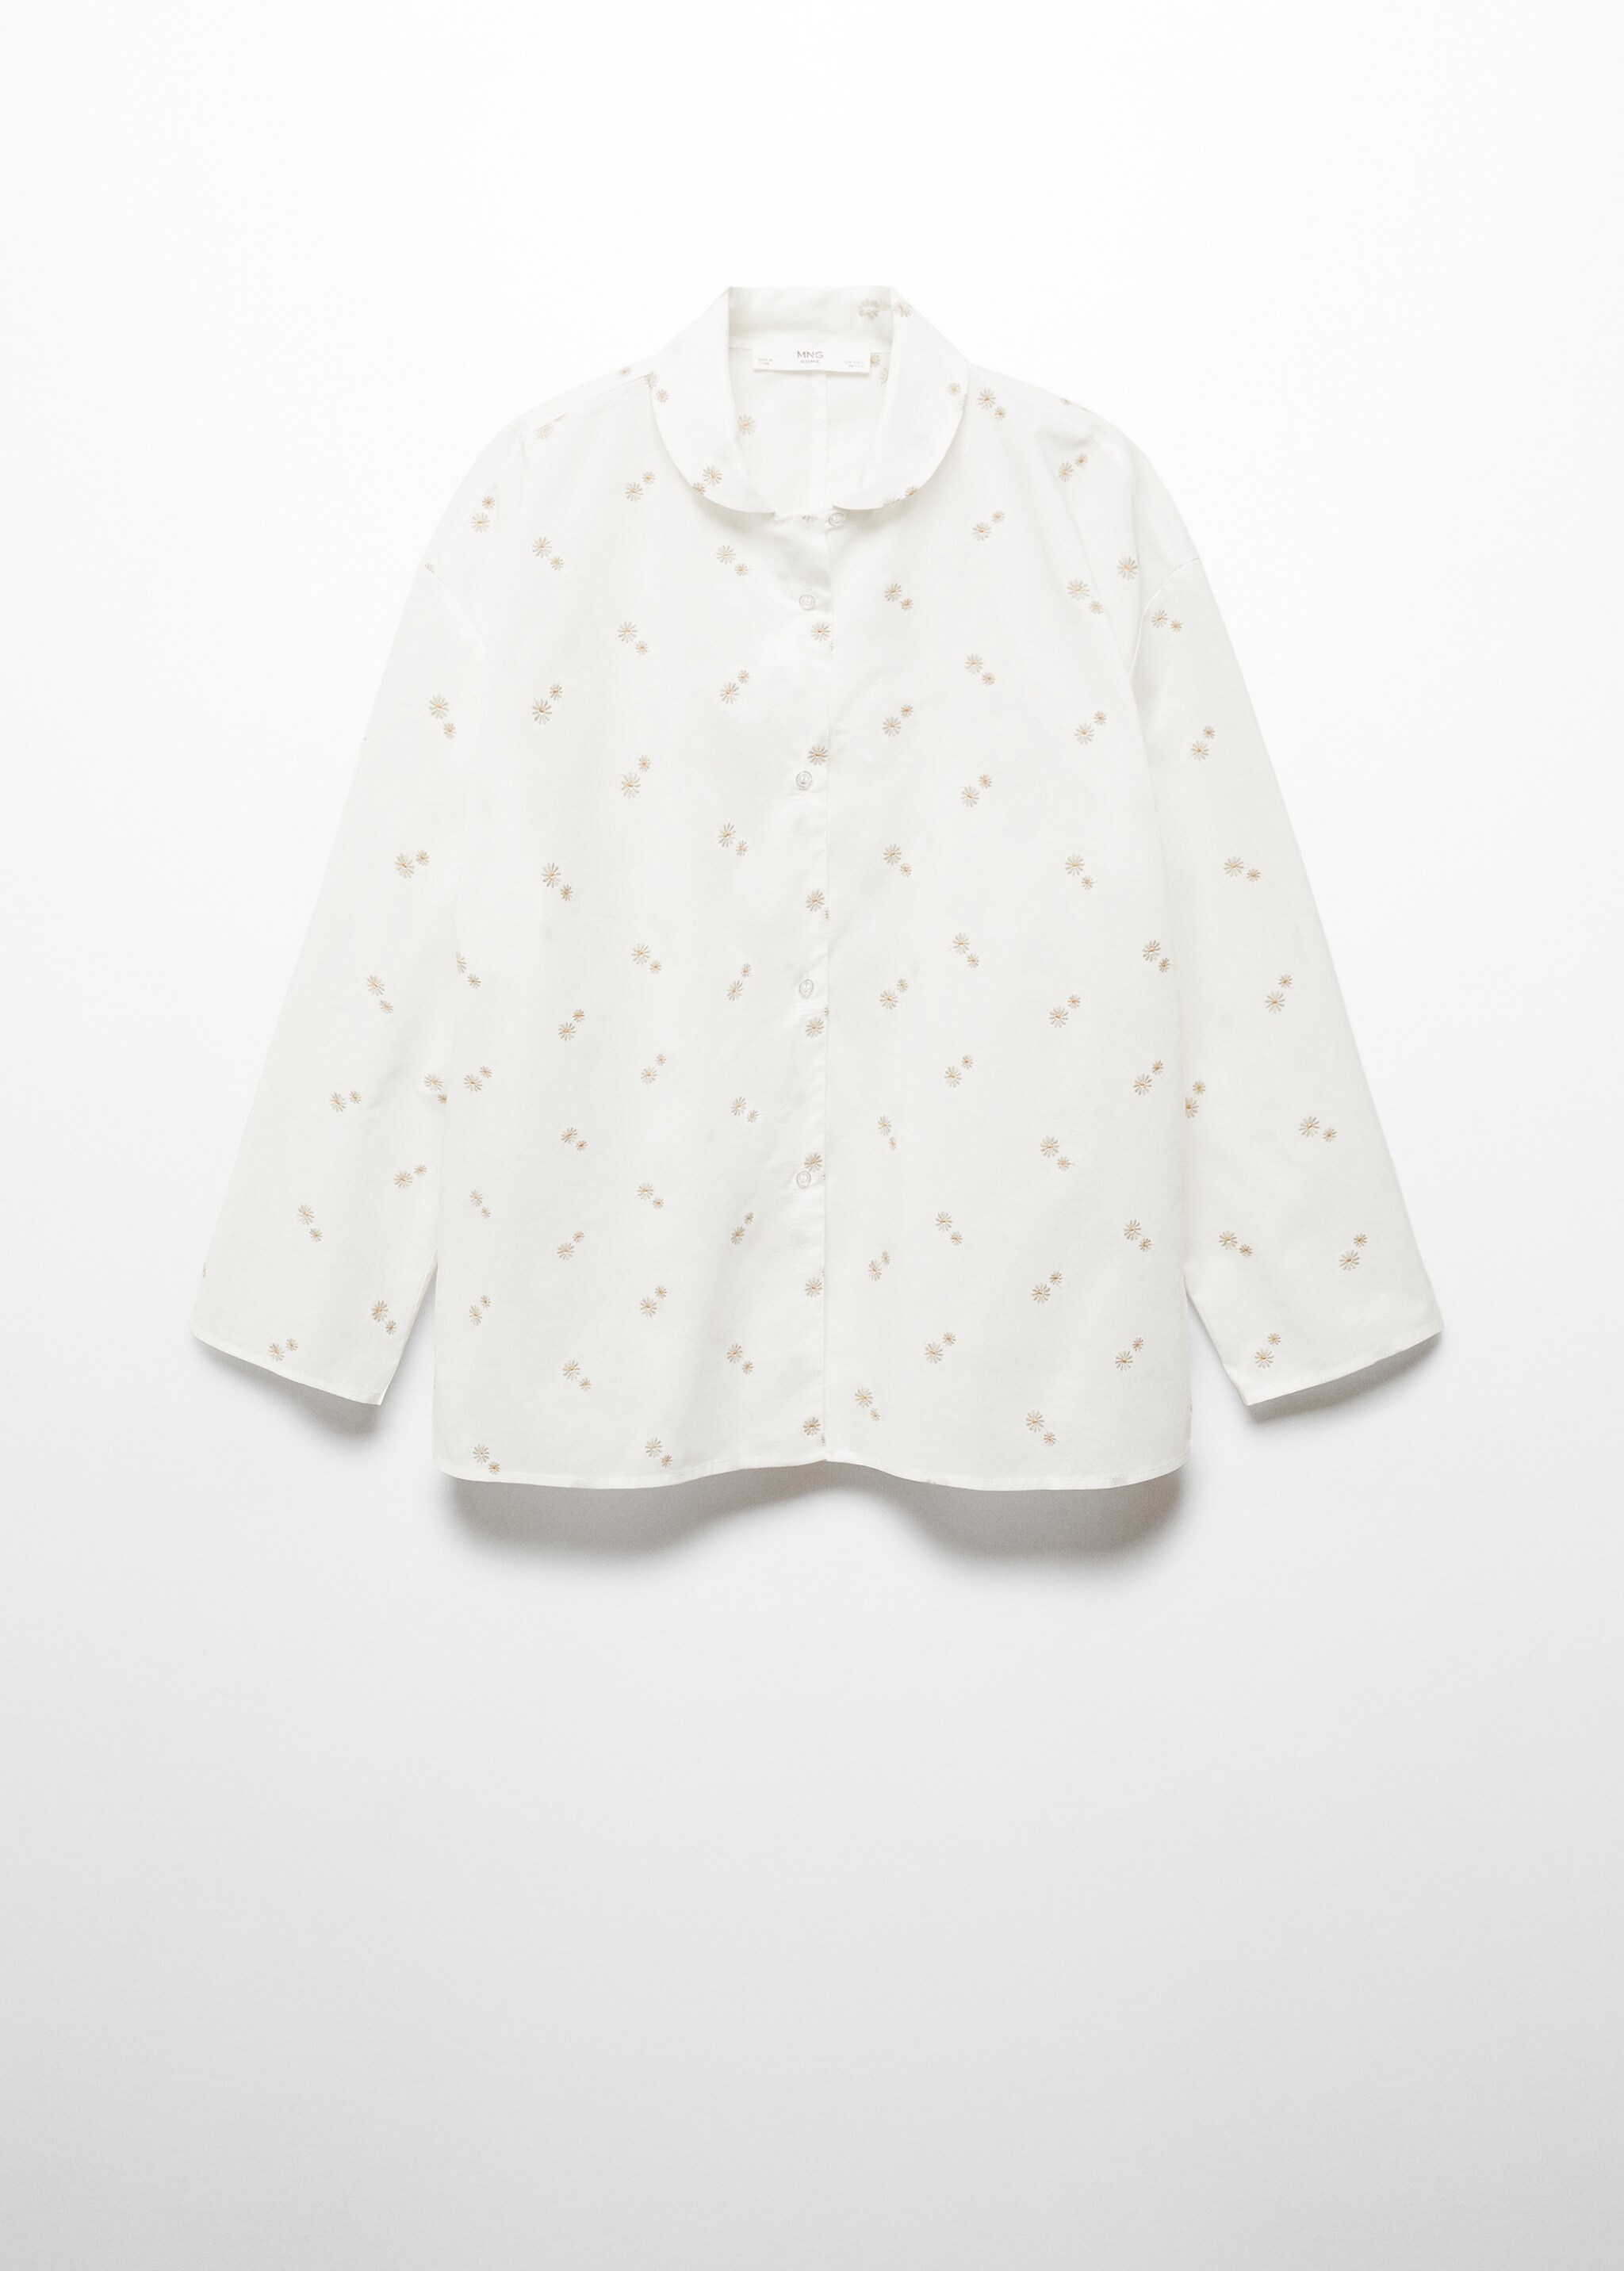 Camisa pijama algodón bordado floral - Artículo sin modelo